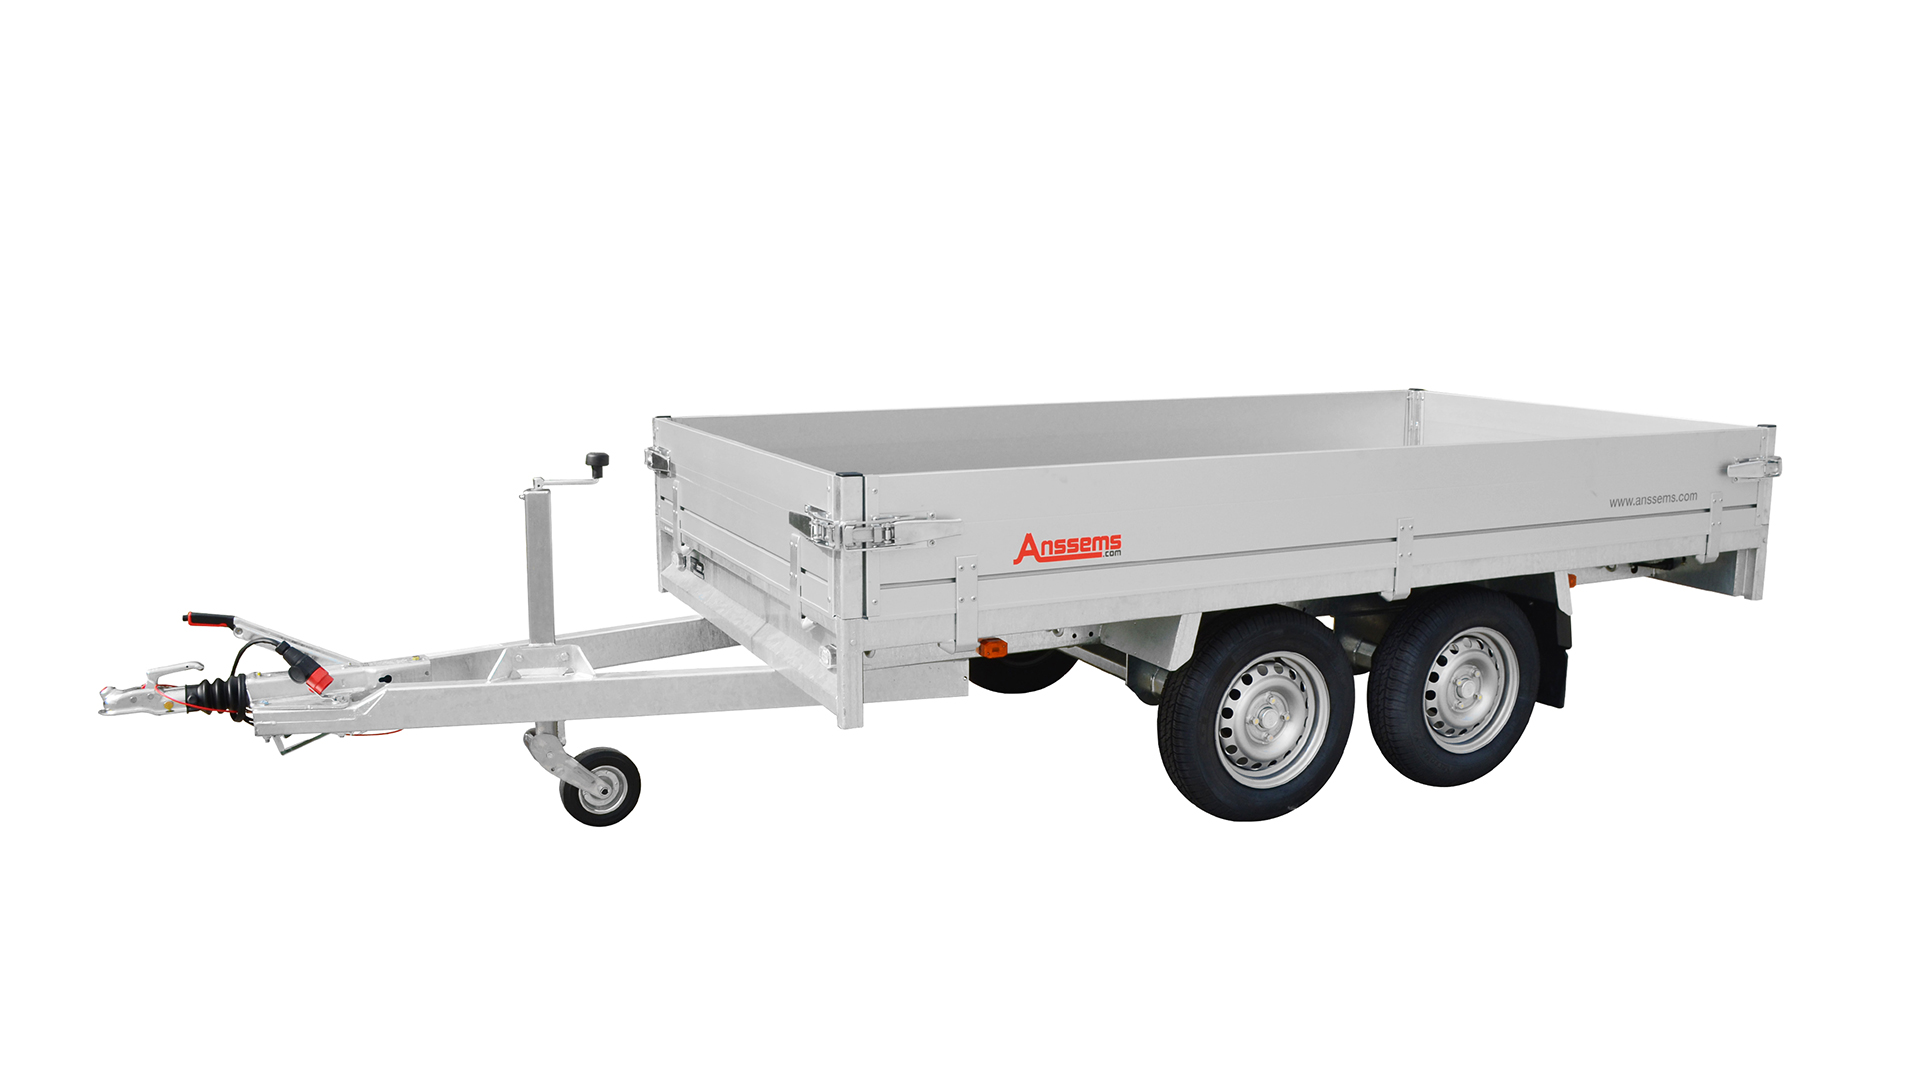 Anssems PKW Anhänger Hochlader Alu 2500 kg, Ladefläche 3,05x 1,53 m